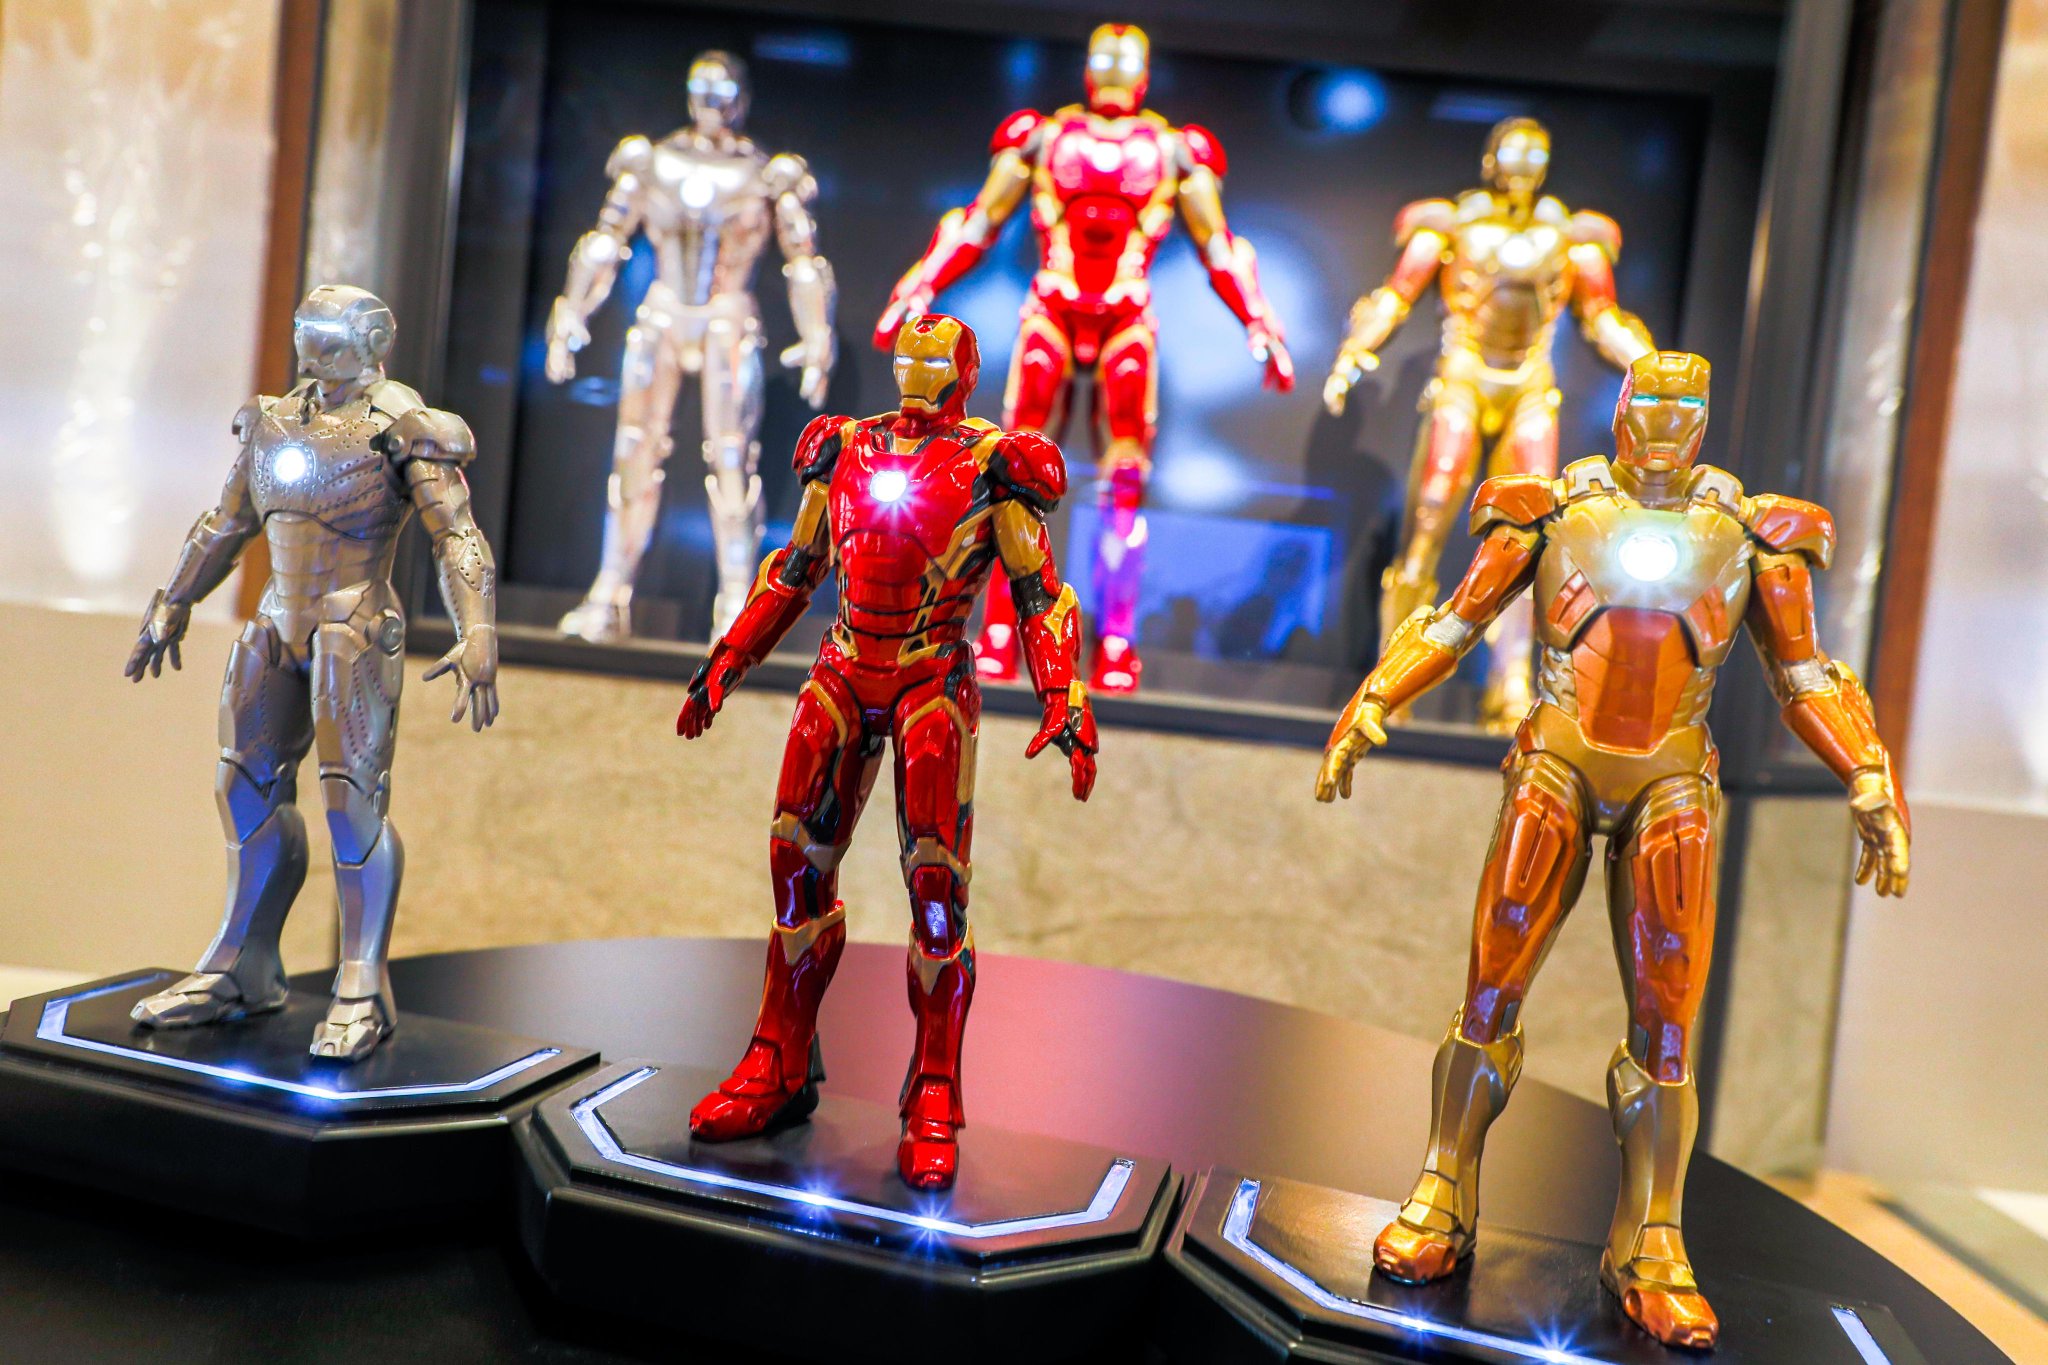 Tendance maintenant - Disney Ventes Figurine Iron Man articulée et parlante  en ligne